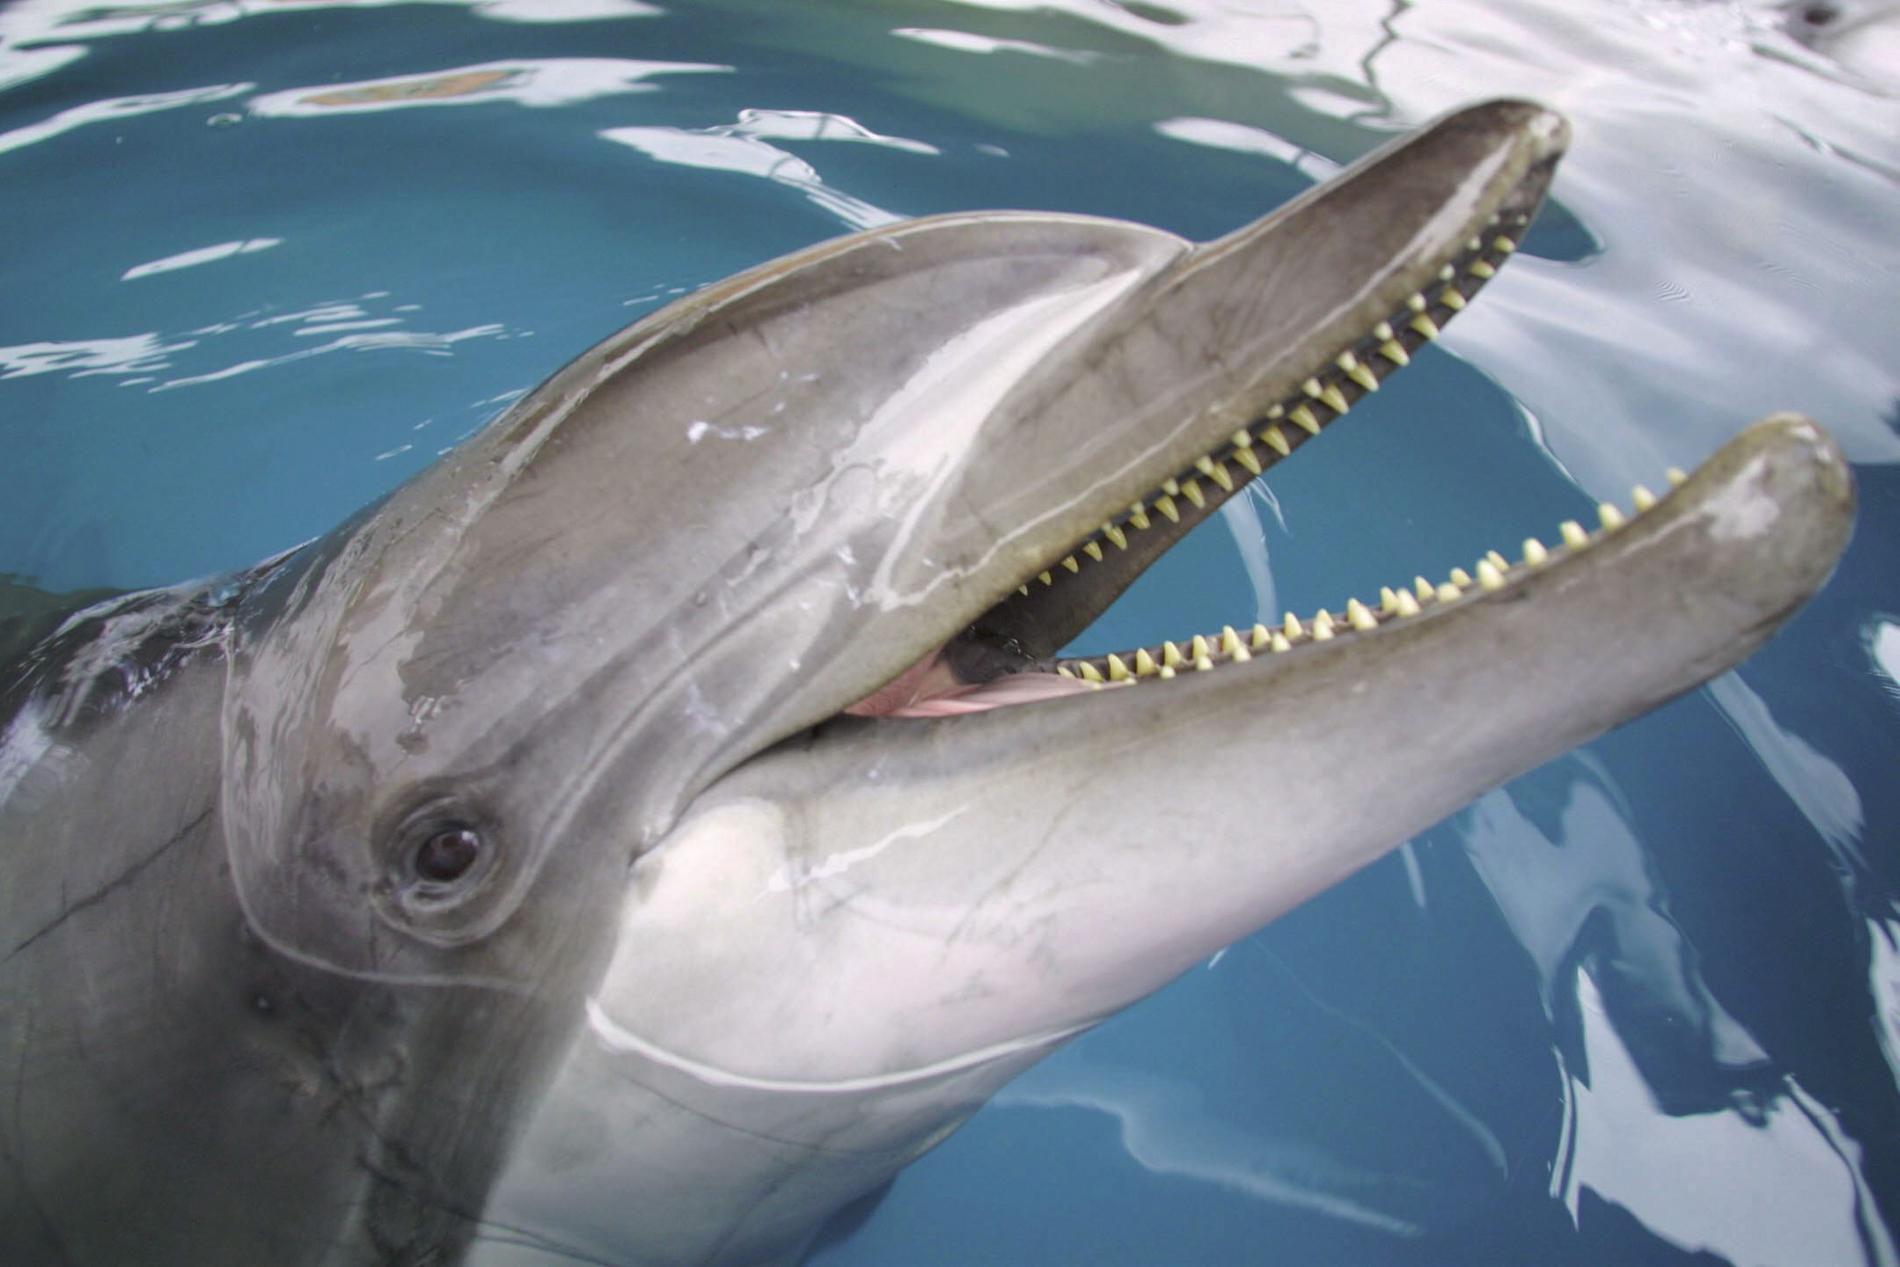 Badande i Storsjön ska få sällskap av delfiner, enligt ett aprilskämt från Östersunds kommun. Arkivbild.